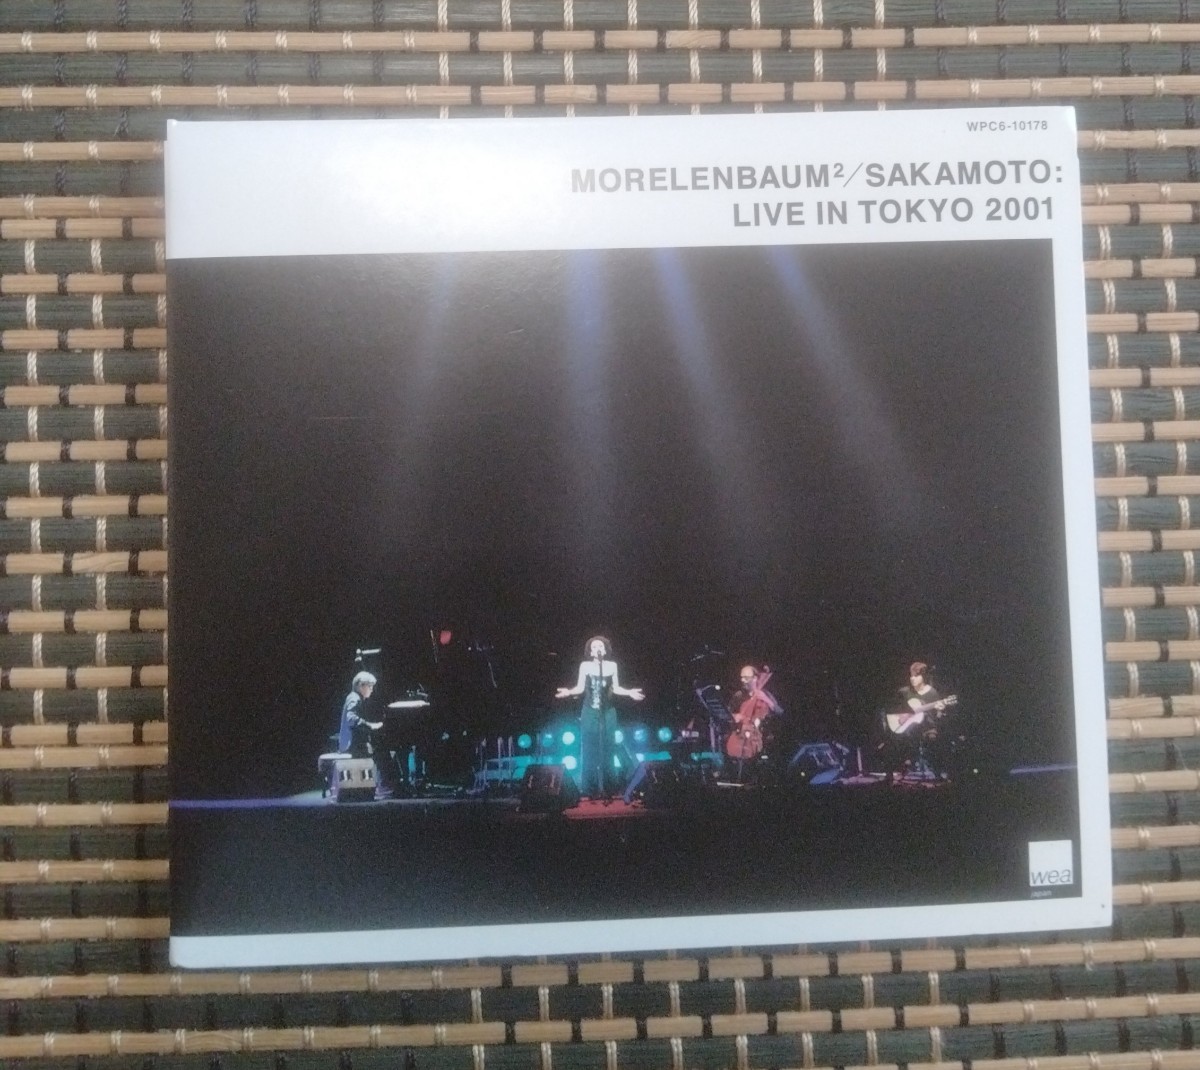 ♪モレレンバウム2 / サカモト (MORELENBAUM2 / SAKAMOTO) Live In Tokyo 2001♪ 坂本龍一 Ryuichi Sakamoto Paula Morelenbaum WPC6-10178